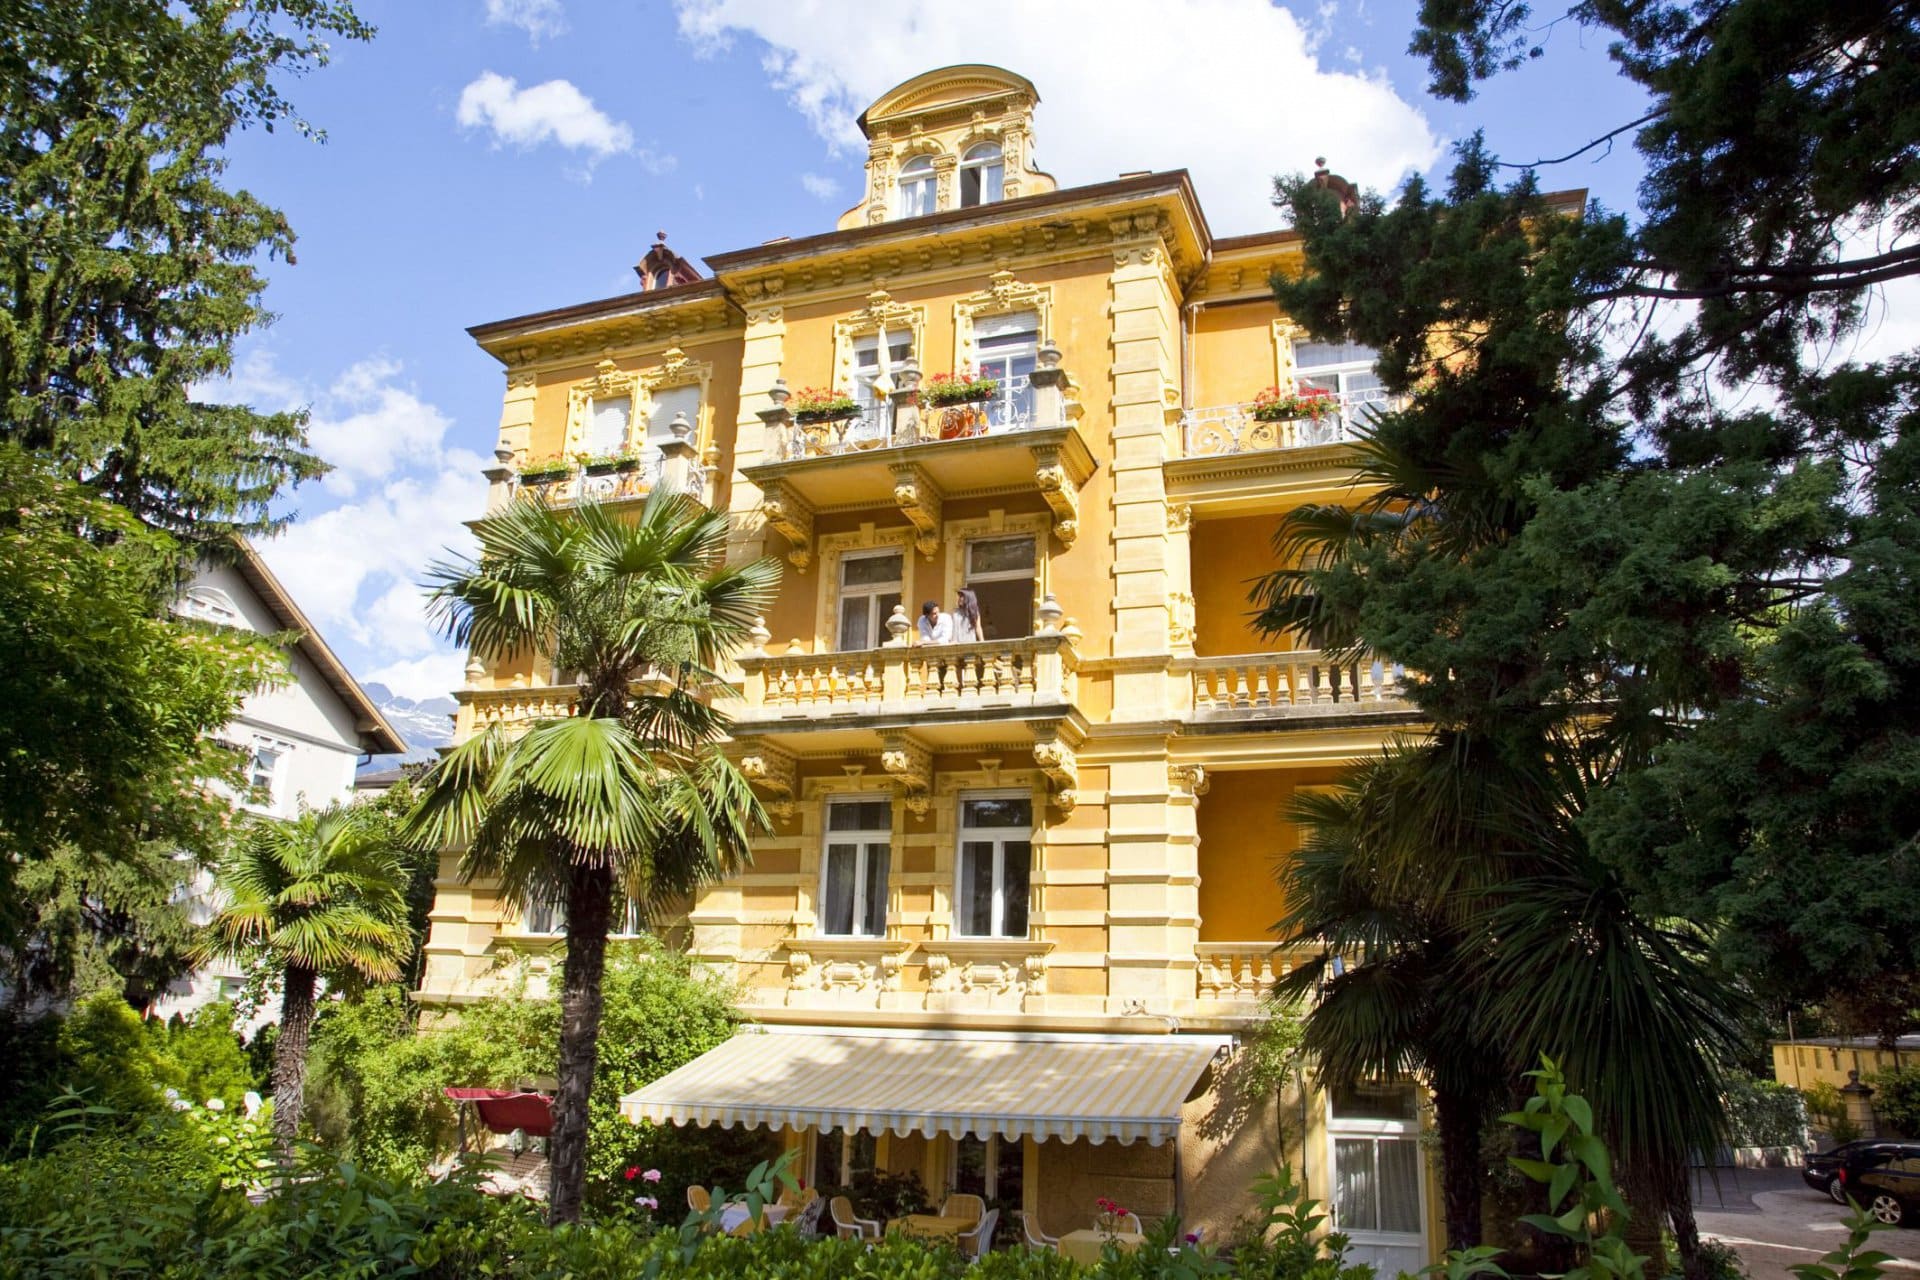 Traumhafter Blick auf das von Palmen umgebene Hotel Westend *** in Meran, Italien, Foto: Hotel Westend ***